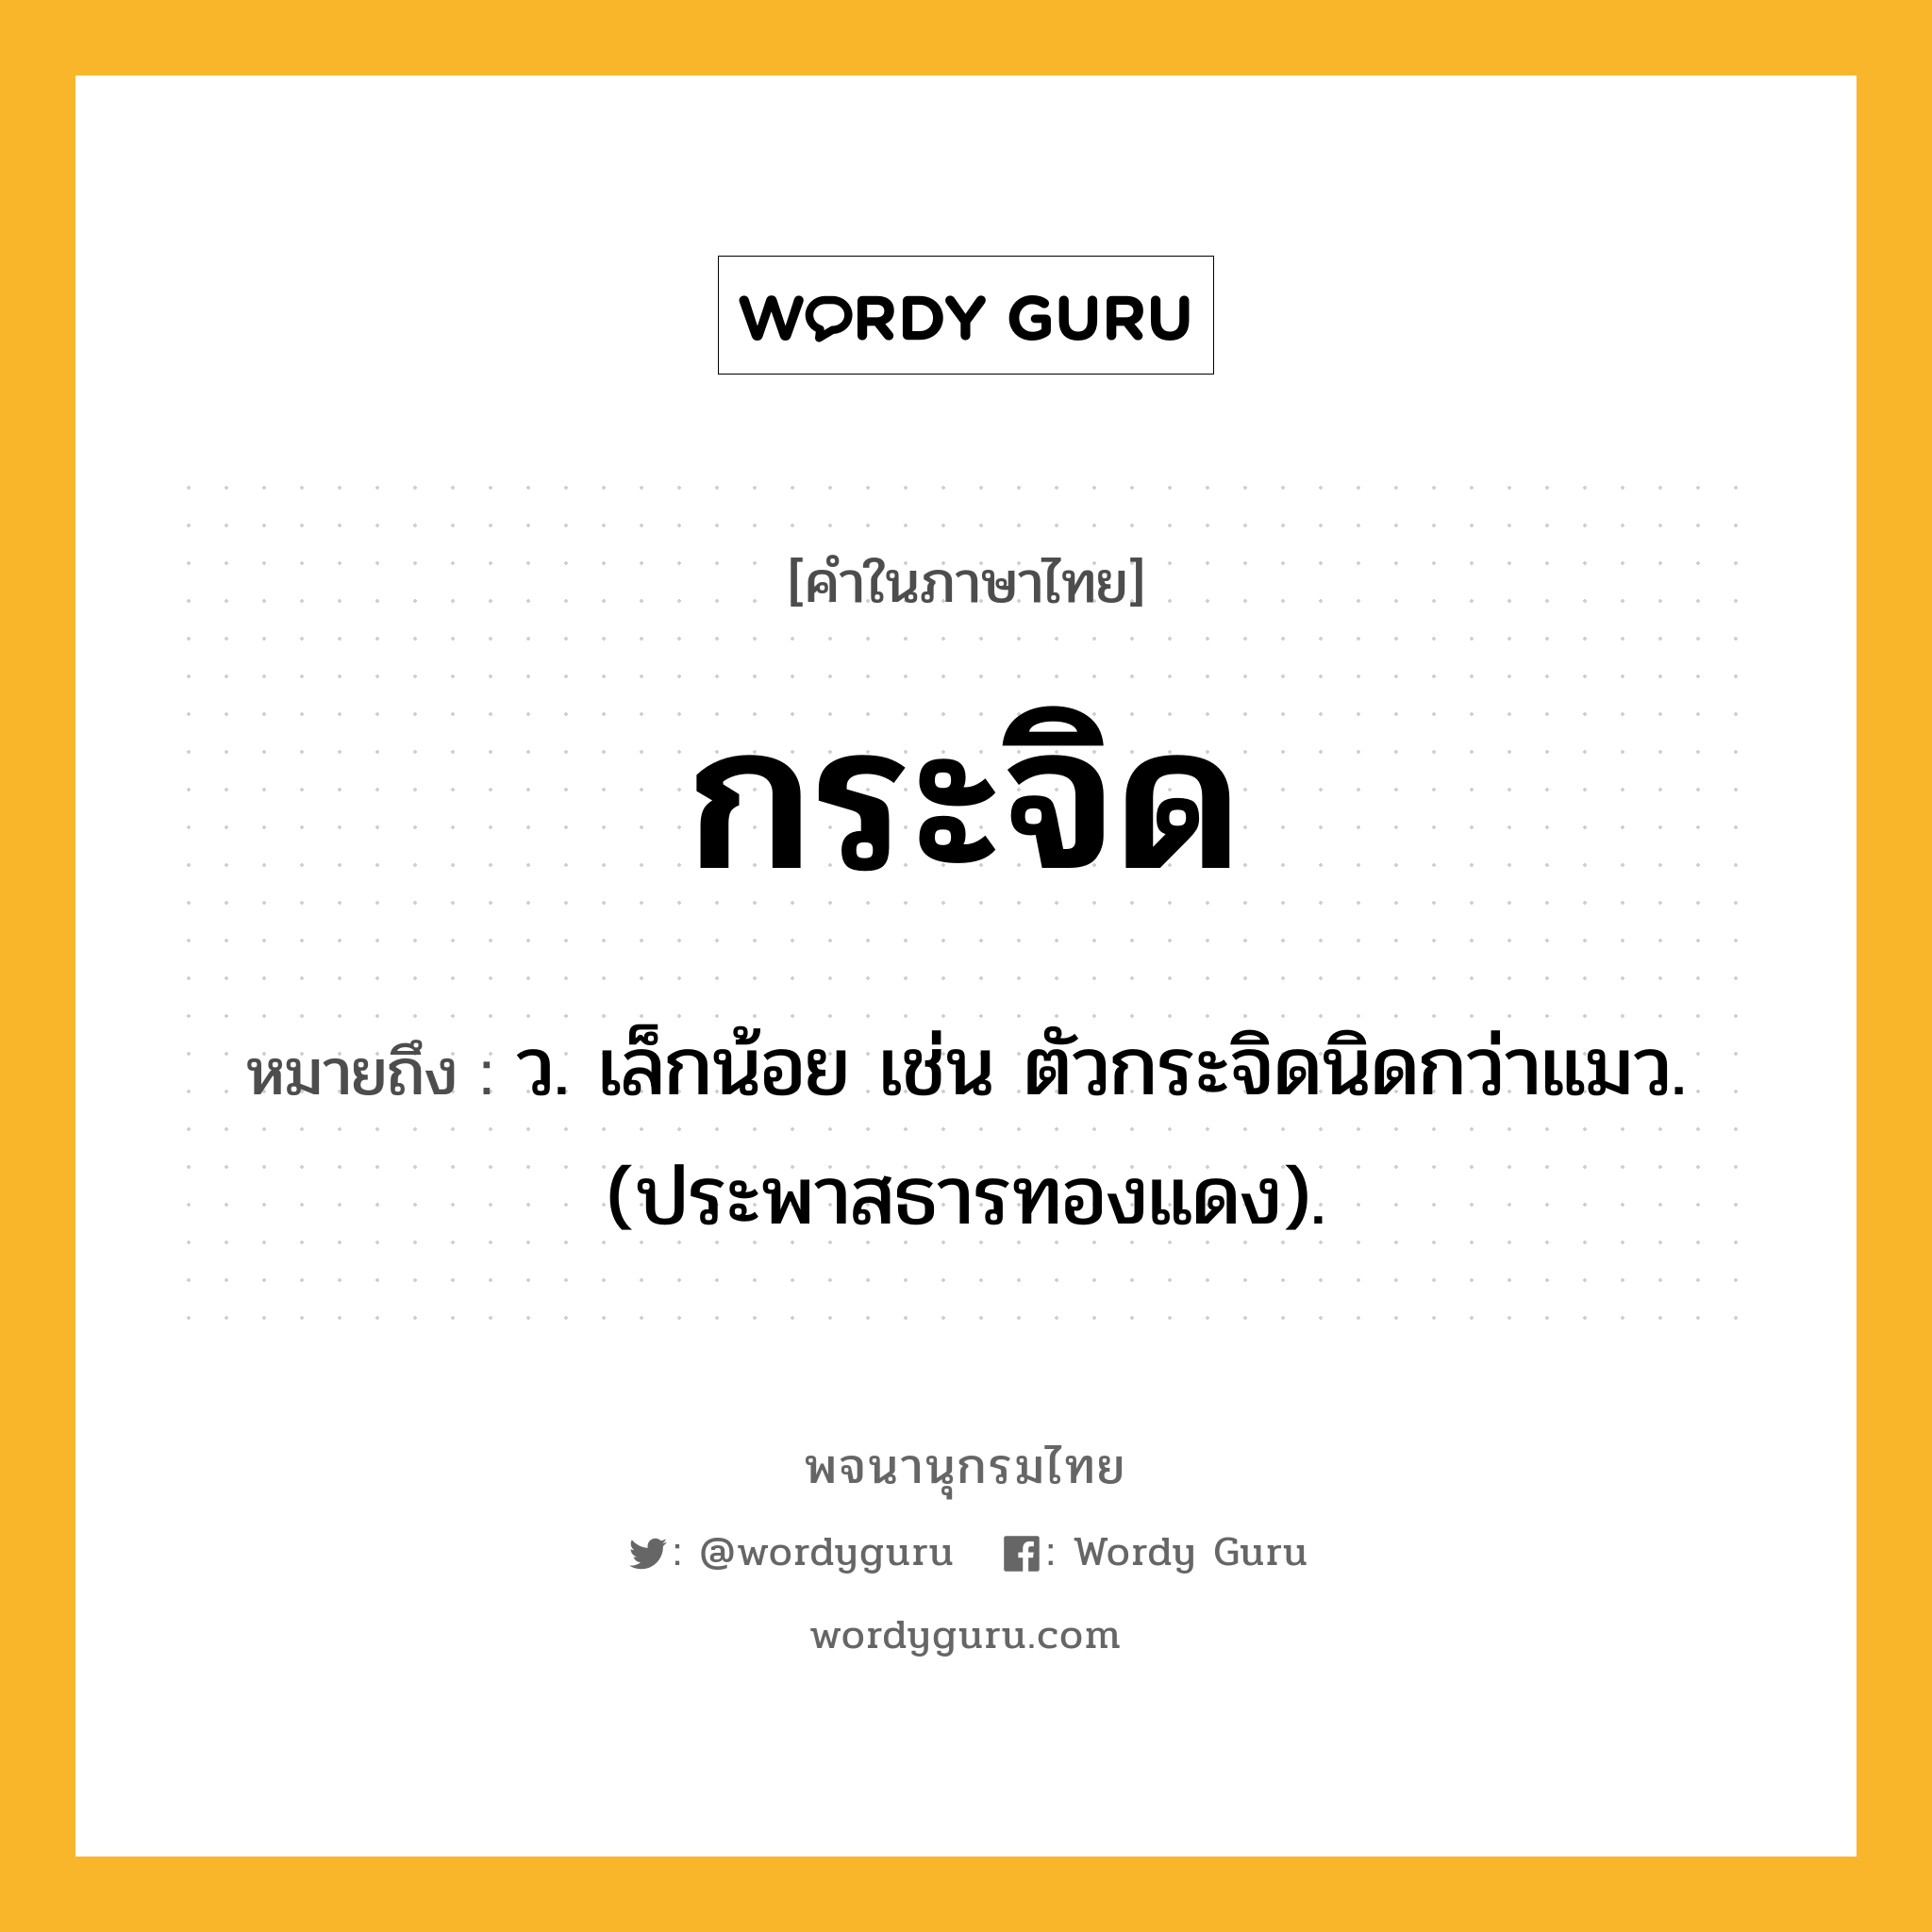 กระจิด ความหมาย หมายถึงอะไร?, คำในภาษาไทย กระจิด หมายถึง ว. เล็กน้อย เช่น ตัวกระจิดนิดกว่าแมว. (ประพาสธารทองแดง).